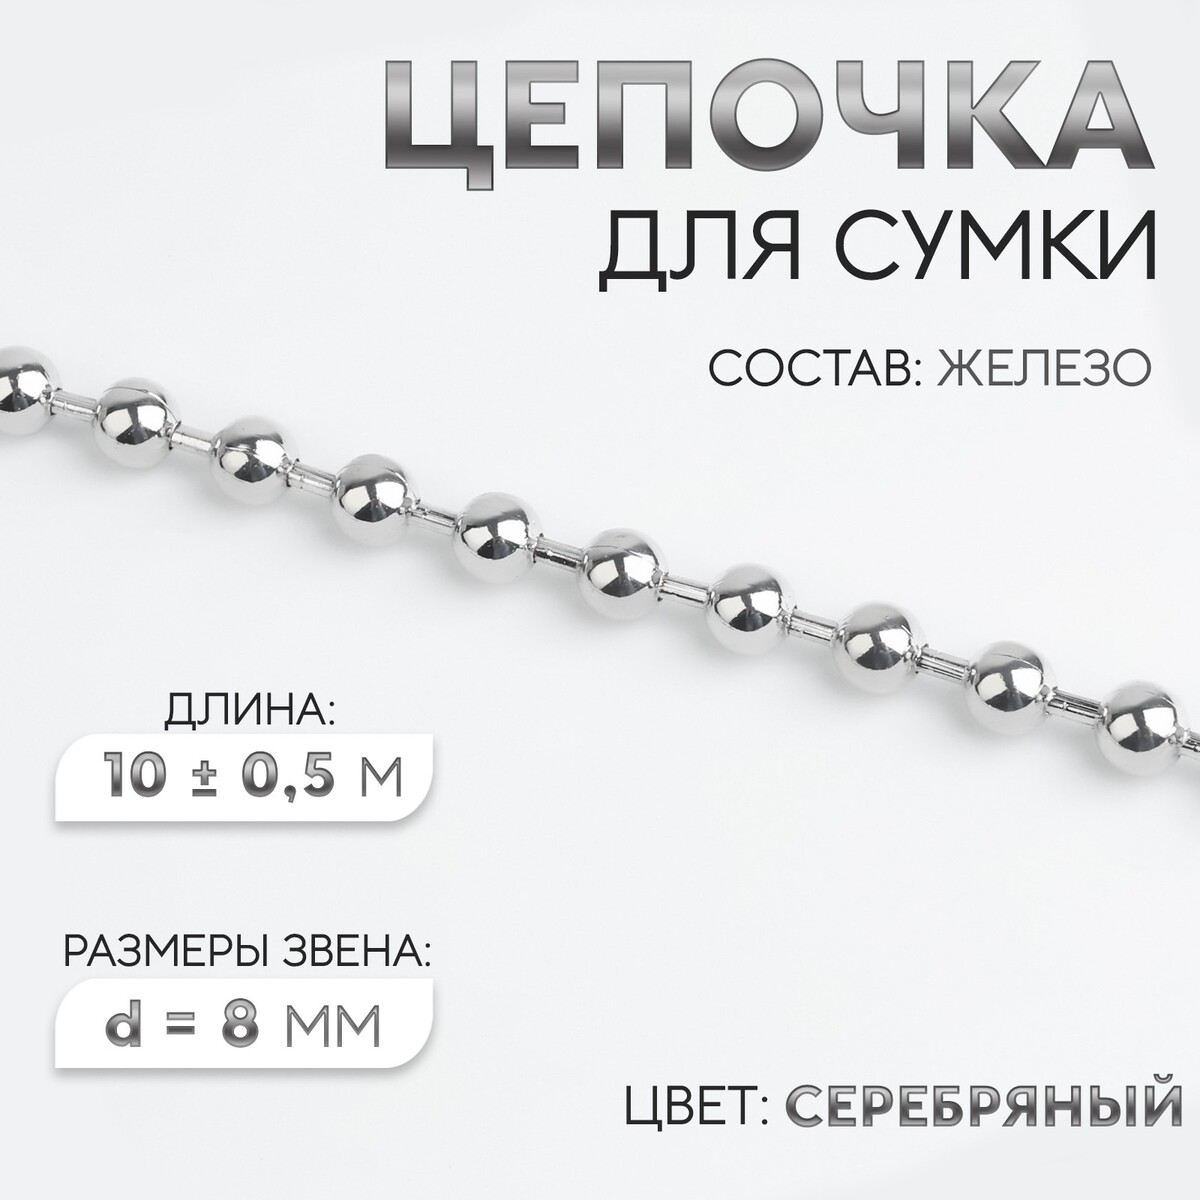 Цепочка для сумки, железная, d = 8 мм, 10 ± 0,5 м, цвет серебряный цепочка для сумки железная 7 × 11 мм 10 ± 0 5 м серебряный